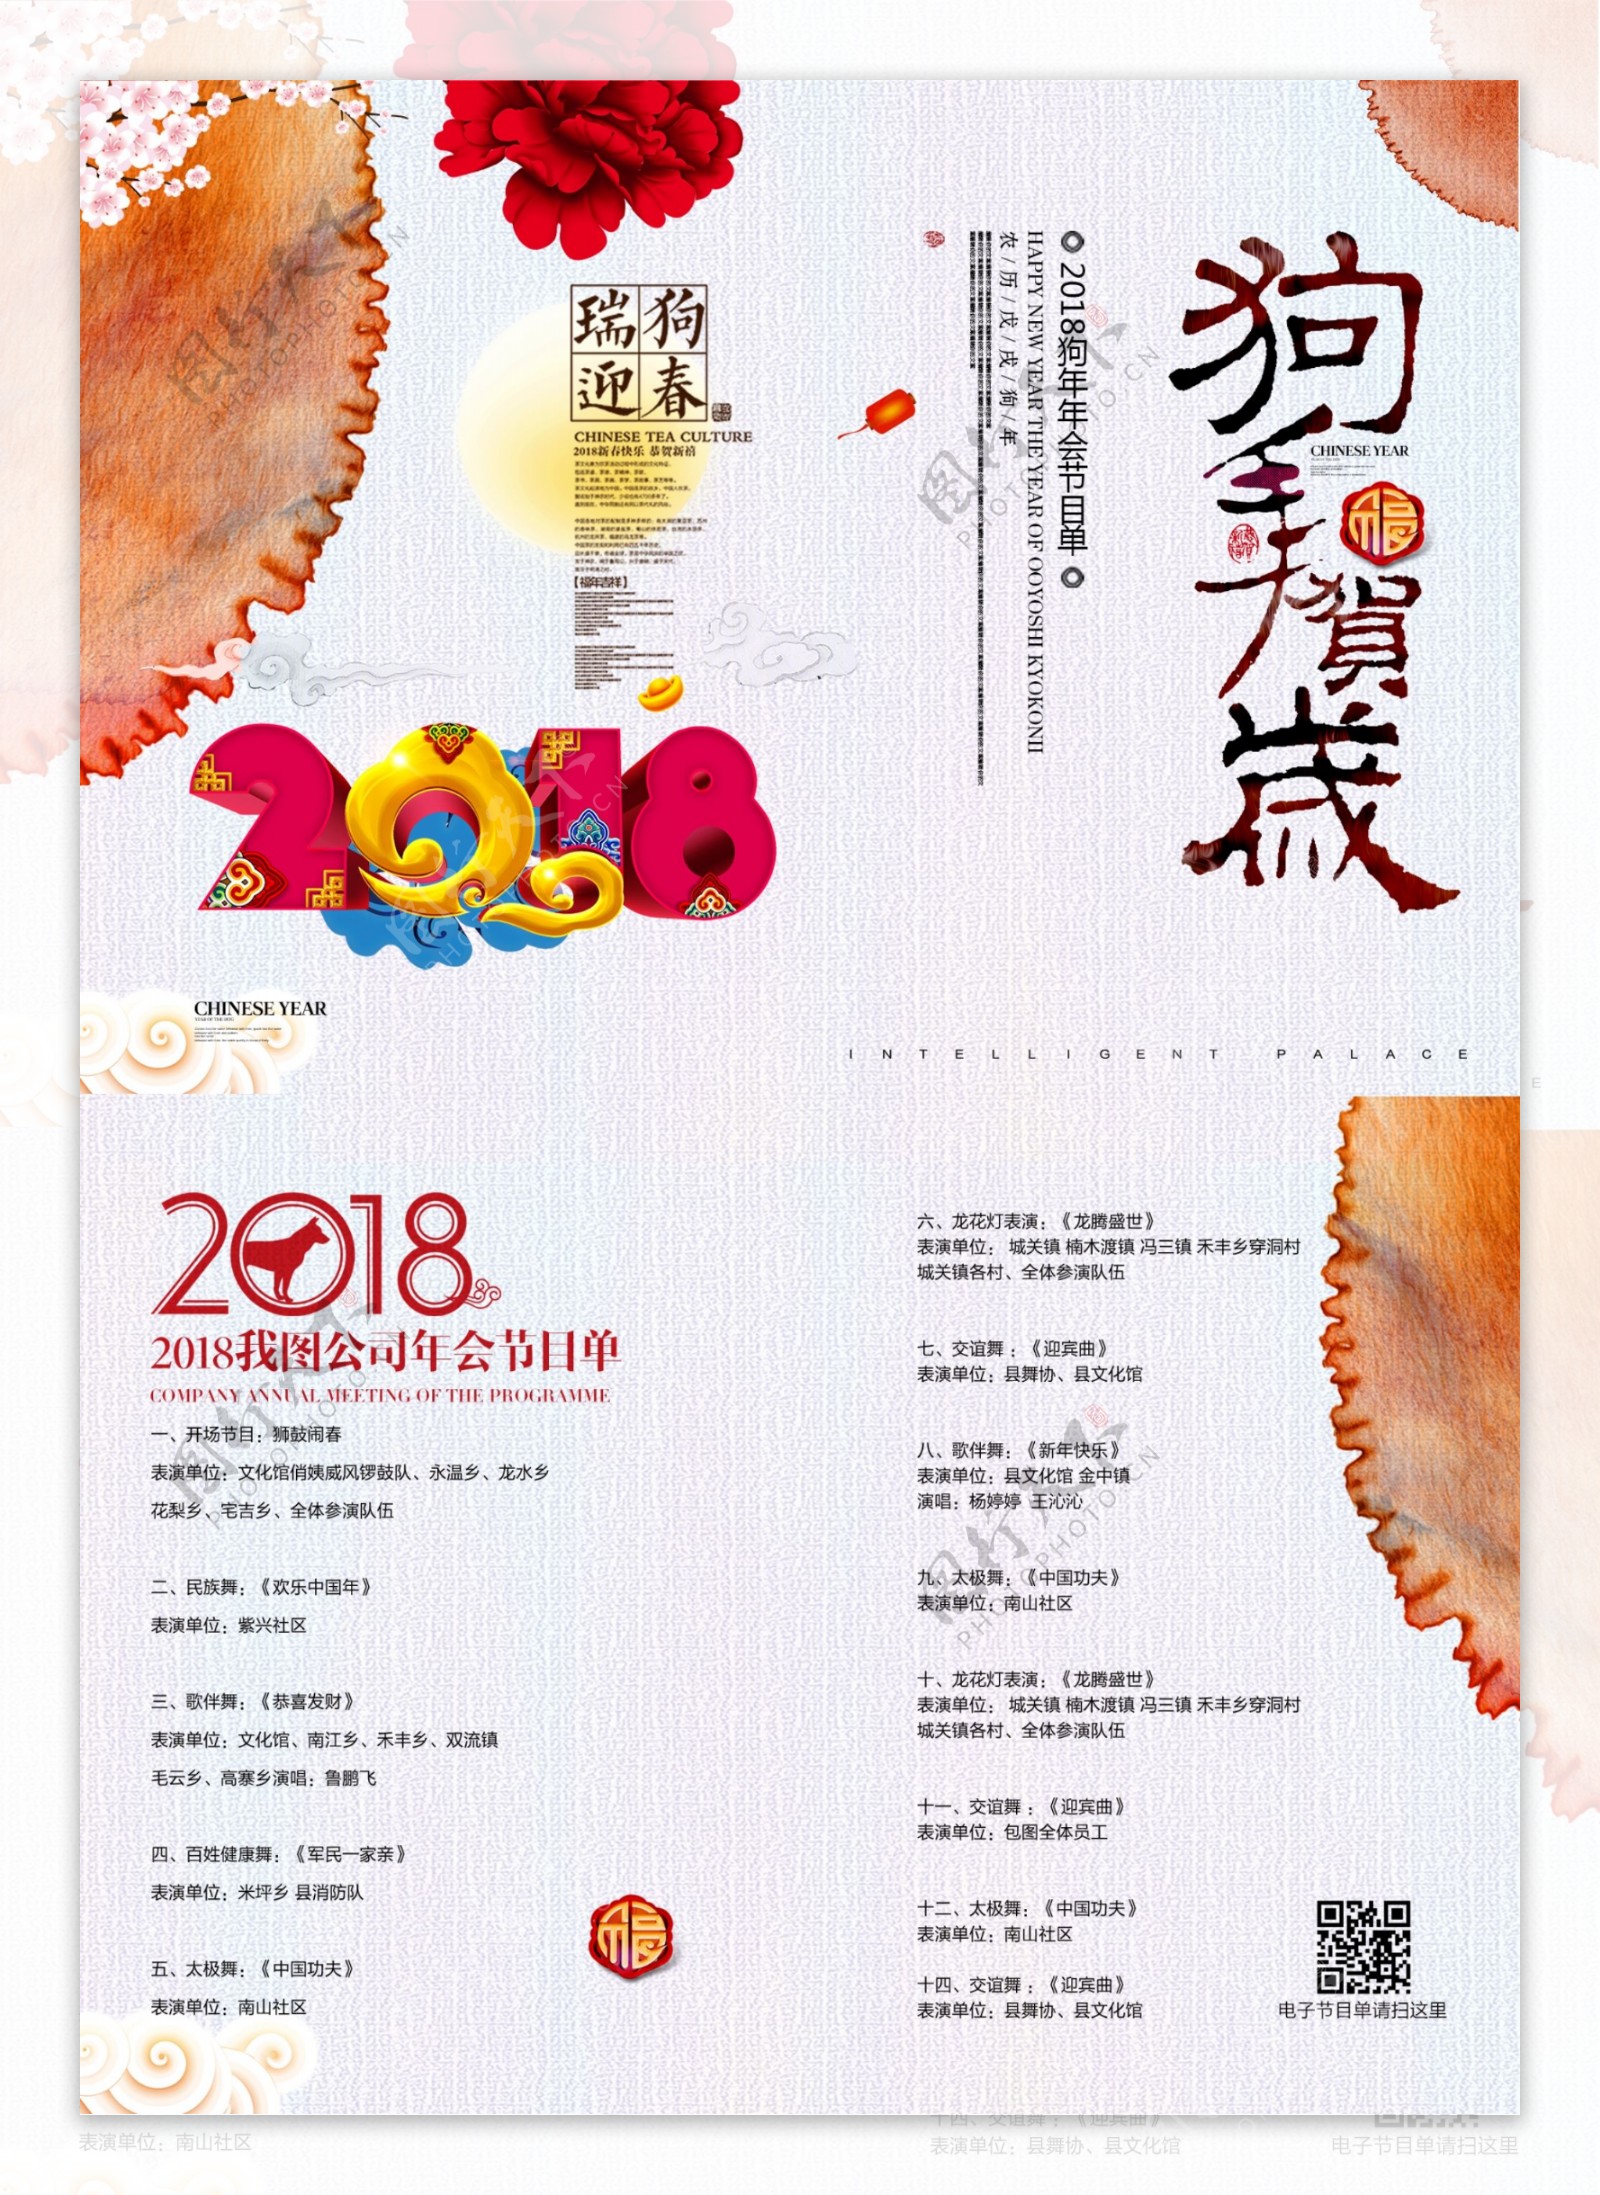 创意中国风2018狗年晚会节目单宣传设计